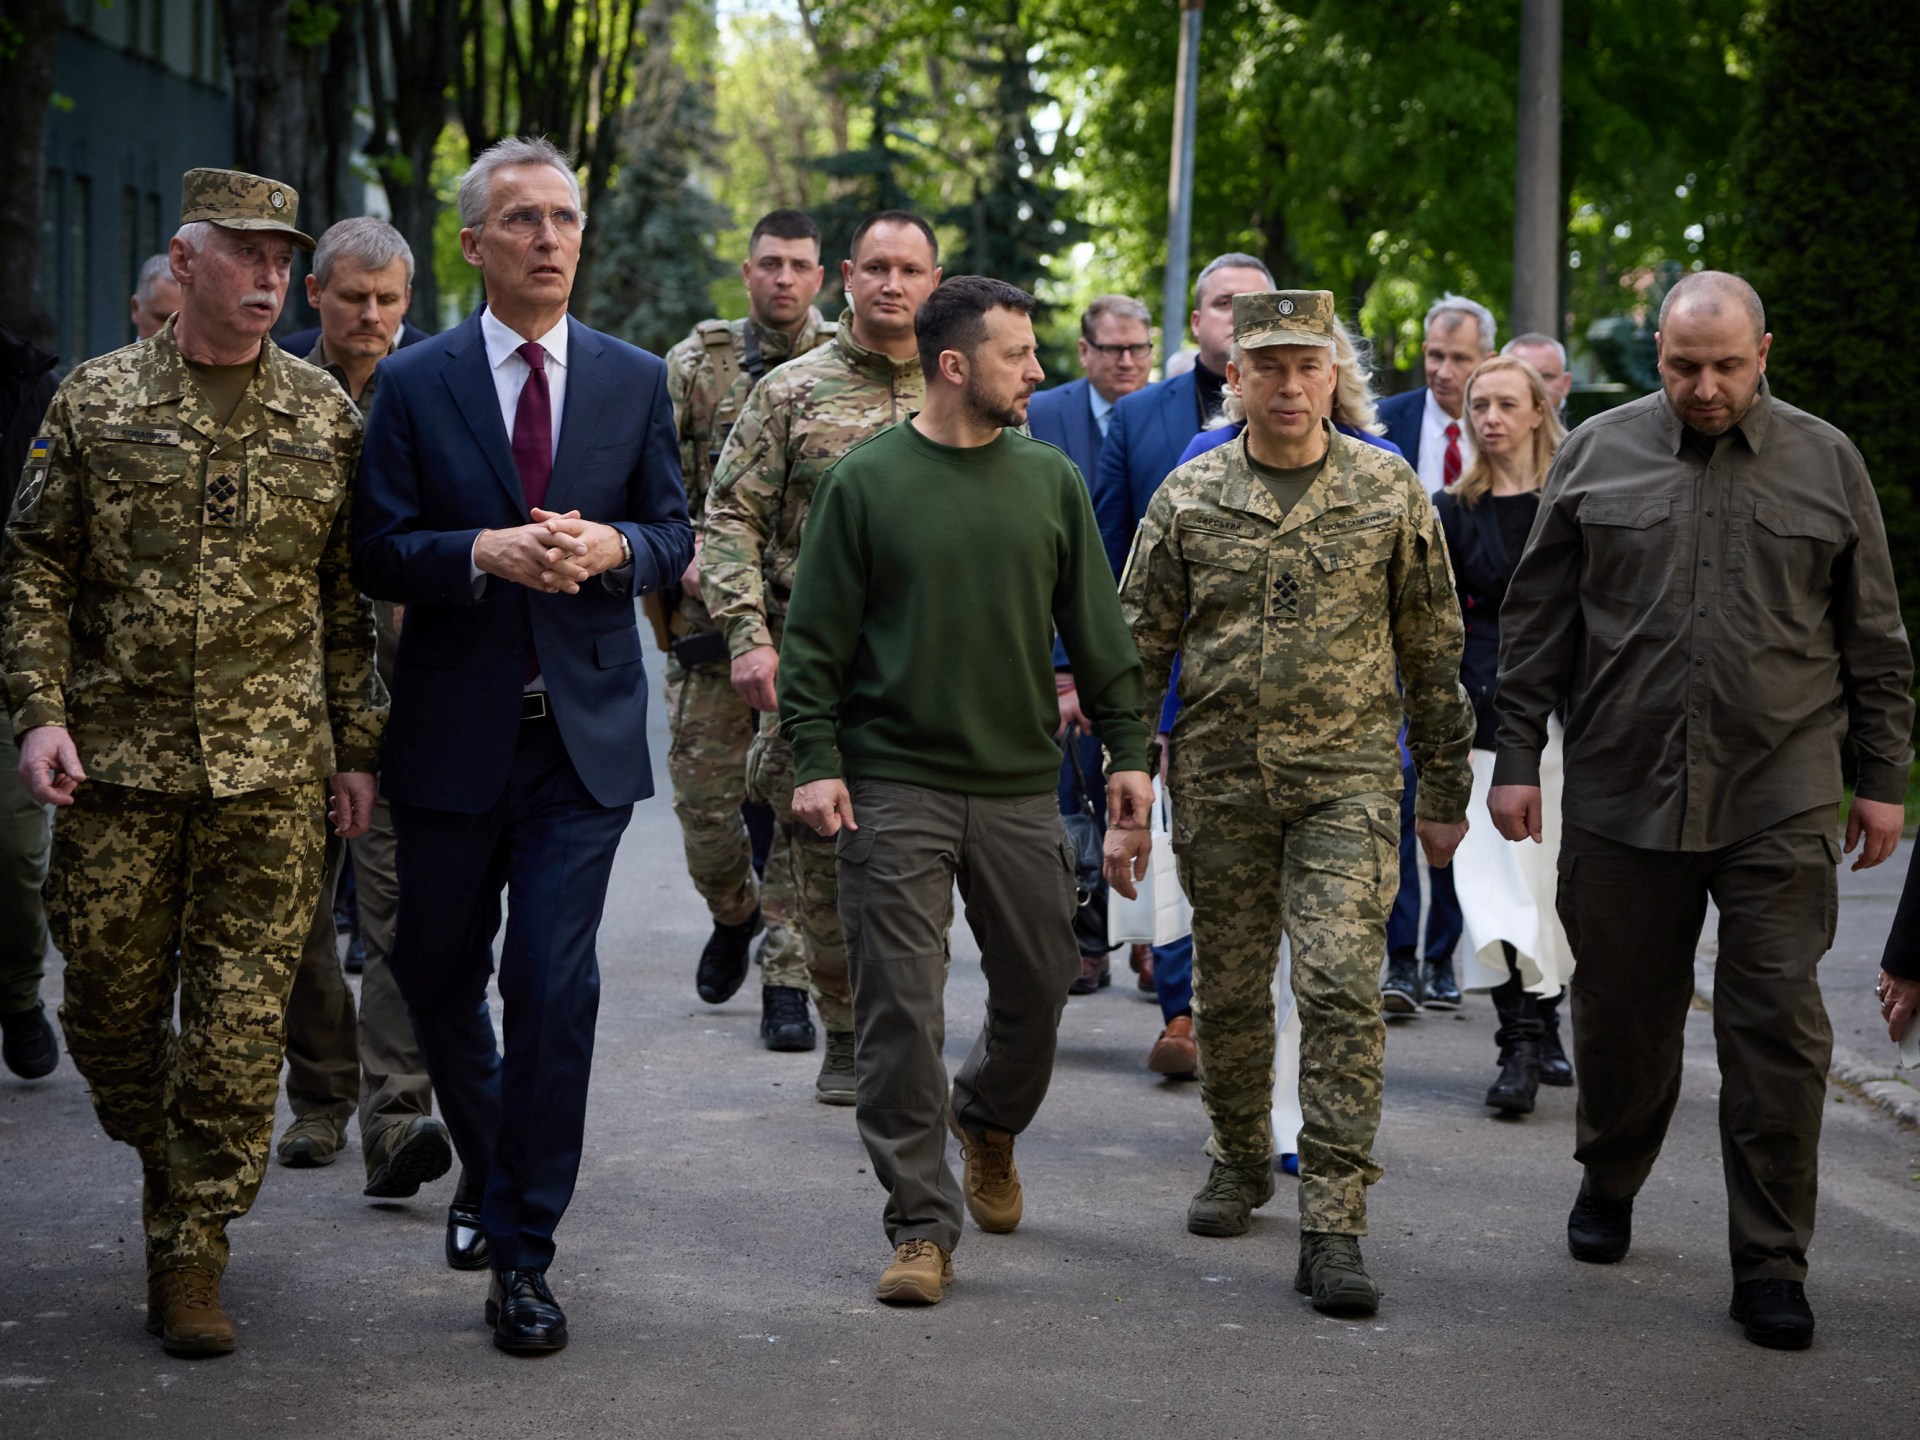 زيلينسكي وستولتنبرغ يتعجلان الأسلحة الغربية لأوكرانيا | أخبار – البوكس نيوز